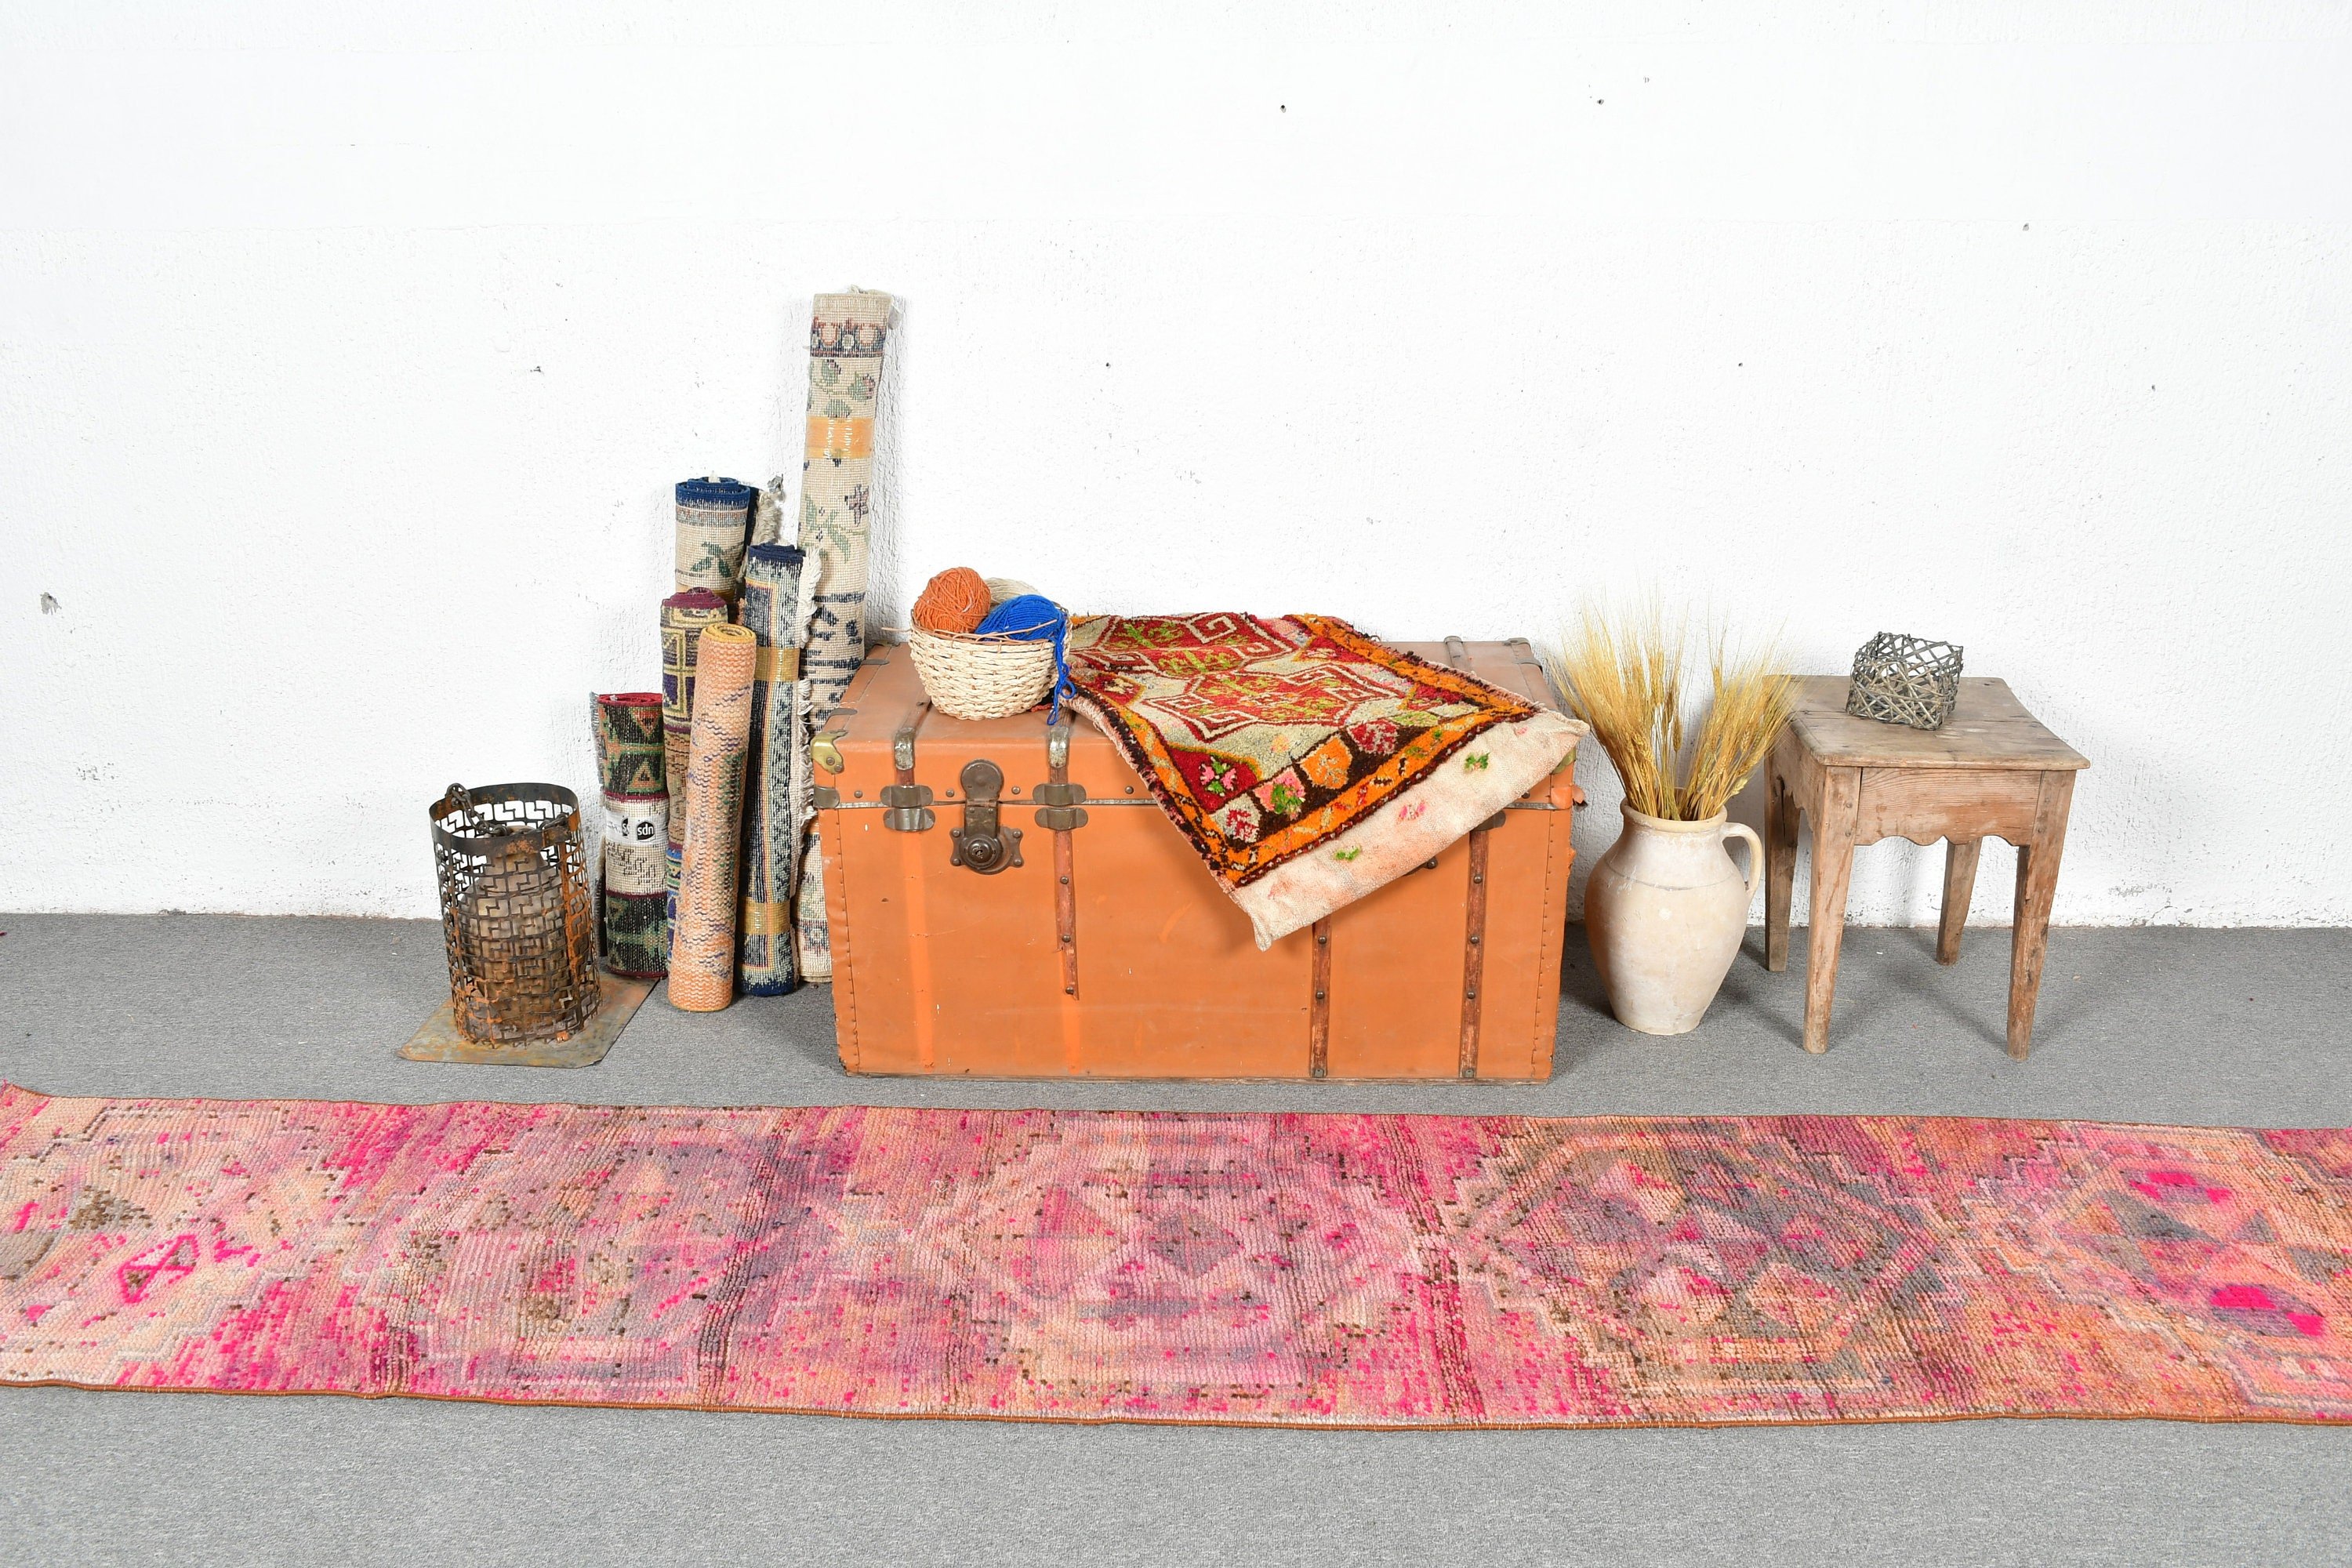 Rugs for Hallway, Floor Rug, Turkish Rug, Pink Oriental Rug, Bedroom Rugs, 2x10.2 ft Runner Rugs, Vintage Rug, Hallway Rug, Kitchen Rugs